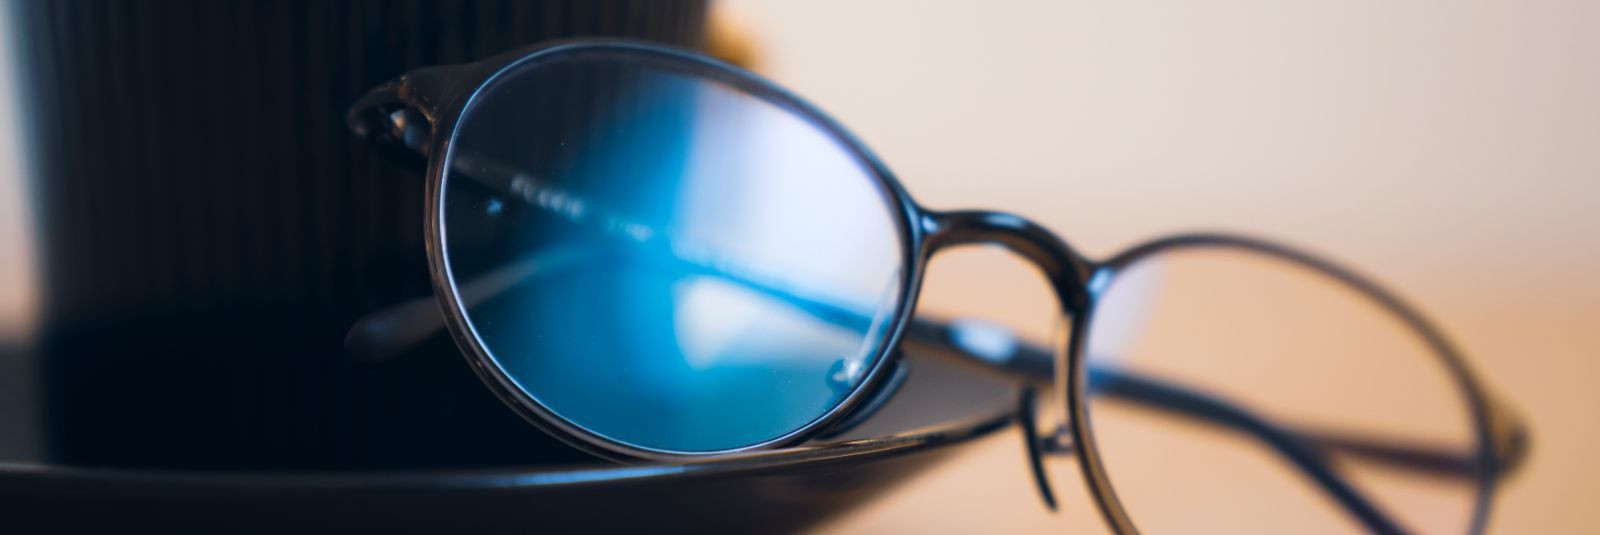 Kaitse oma silmi, naudi mugavust ja tee tervisele head! sinisevalguseprillid.ee e-pood pakub sinise valguse prille, mis on disainitud sinu heaolu silmas pidades